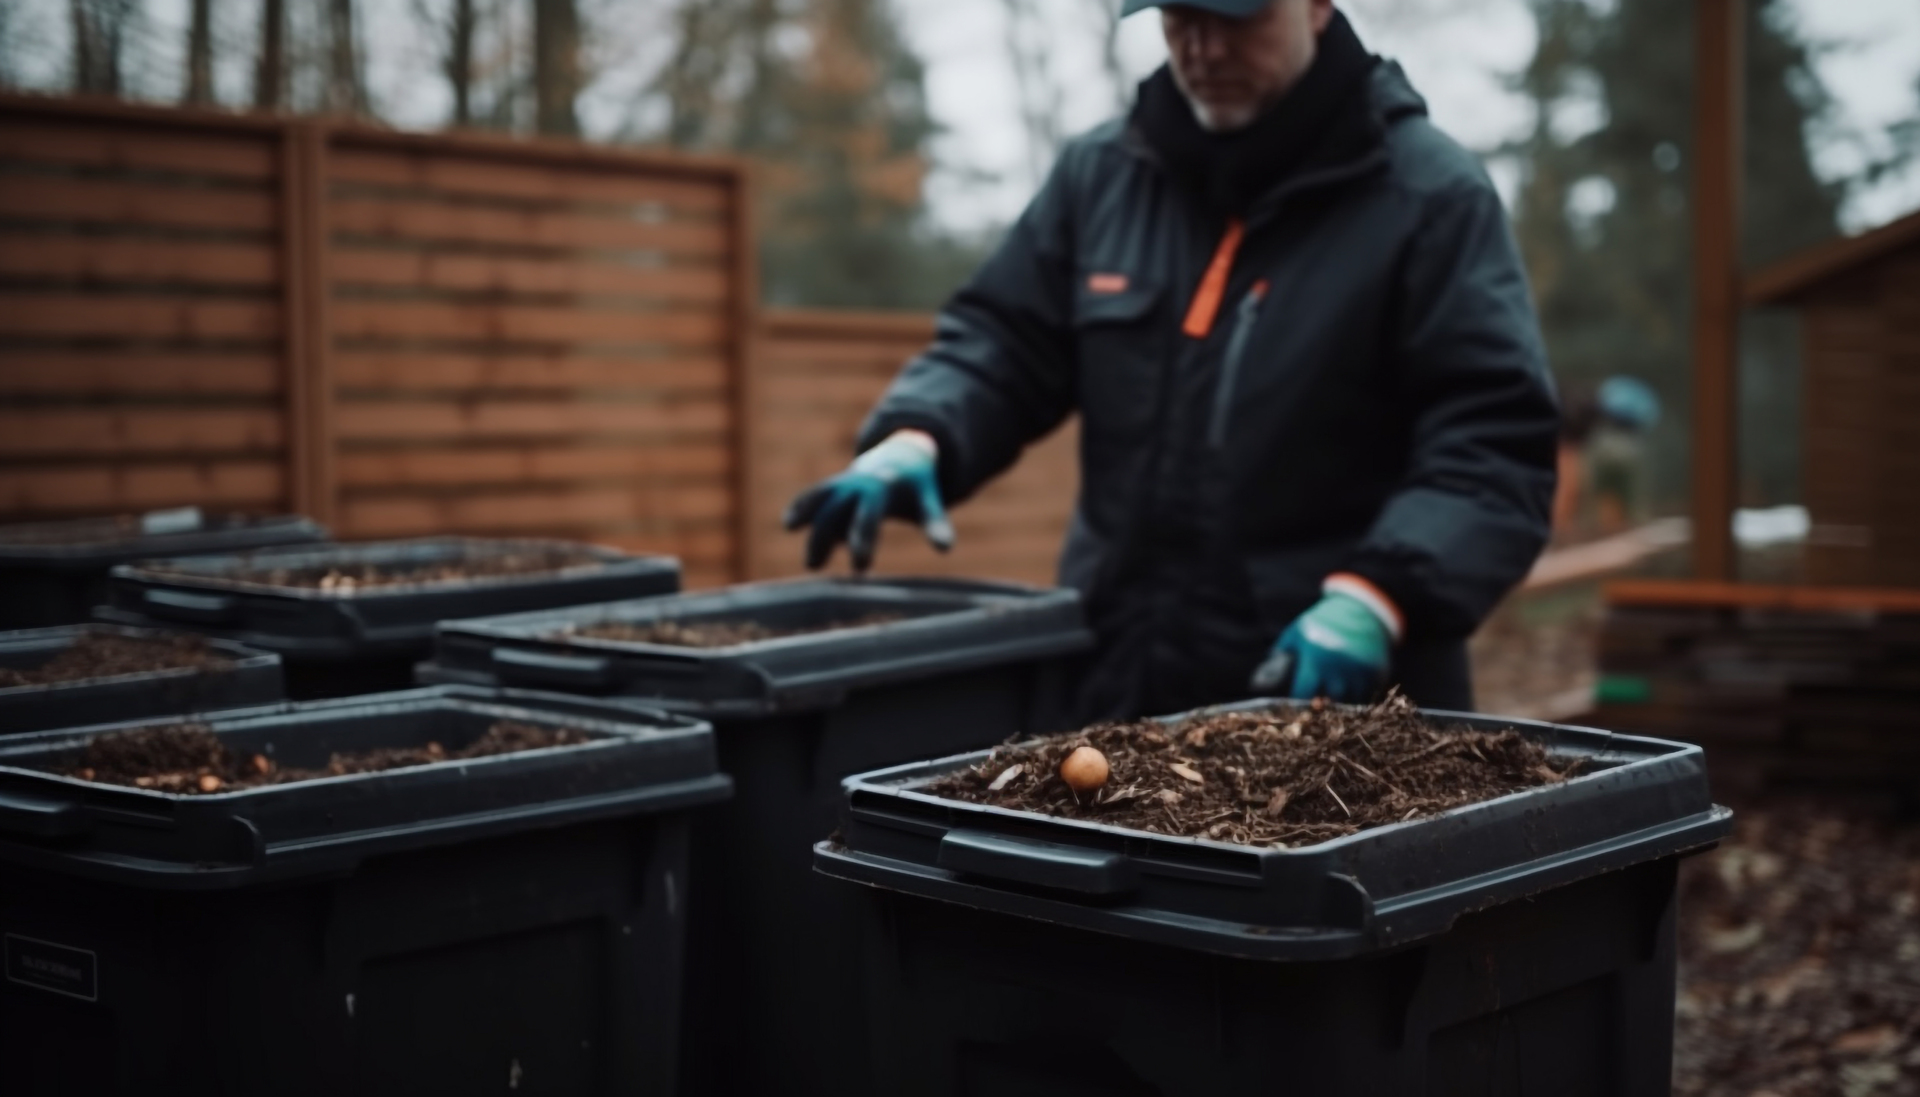 Na tym malowniczym obrazku możemy zobaczyć zimowe kompostowanie w praktyce, gdzie pryzma kompostu jest starannie chroniona przed mrozem. Warstwa słomy lub materiału izolacyjnego została umieszczona na wierzchu, zapewniając ochronę przed niskimi temperaturami. Ten proces zapewnia optymalne warunki dla rozkładu organicznych odpadów nawet w mroźne dni, umożliwiając utrzymanie aktywności mikroorganizmów i produkcję wartościowego kompostu